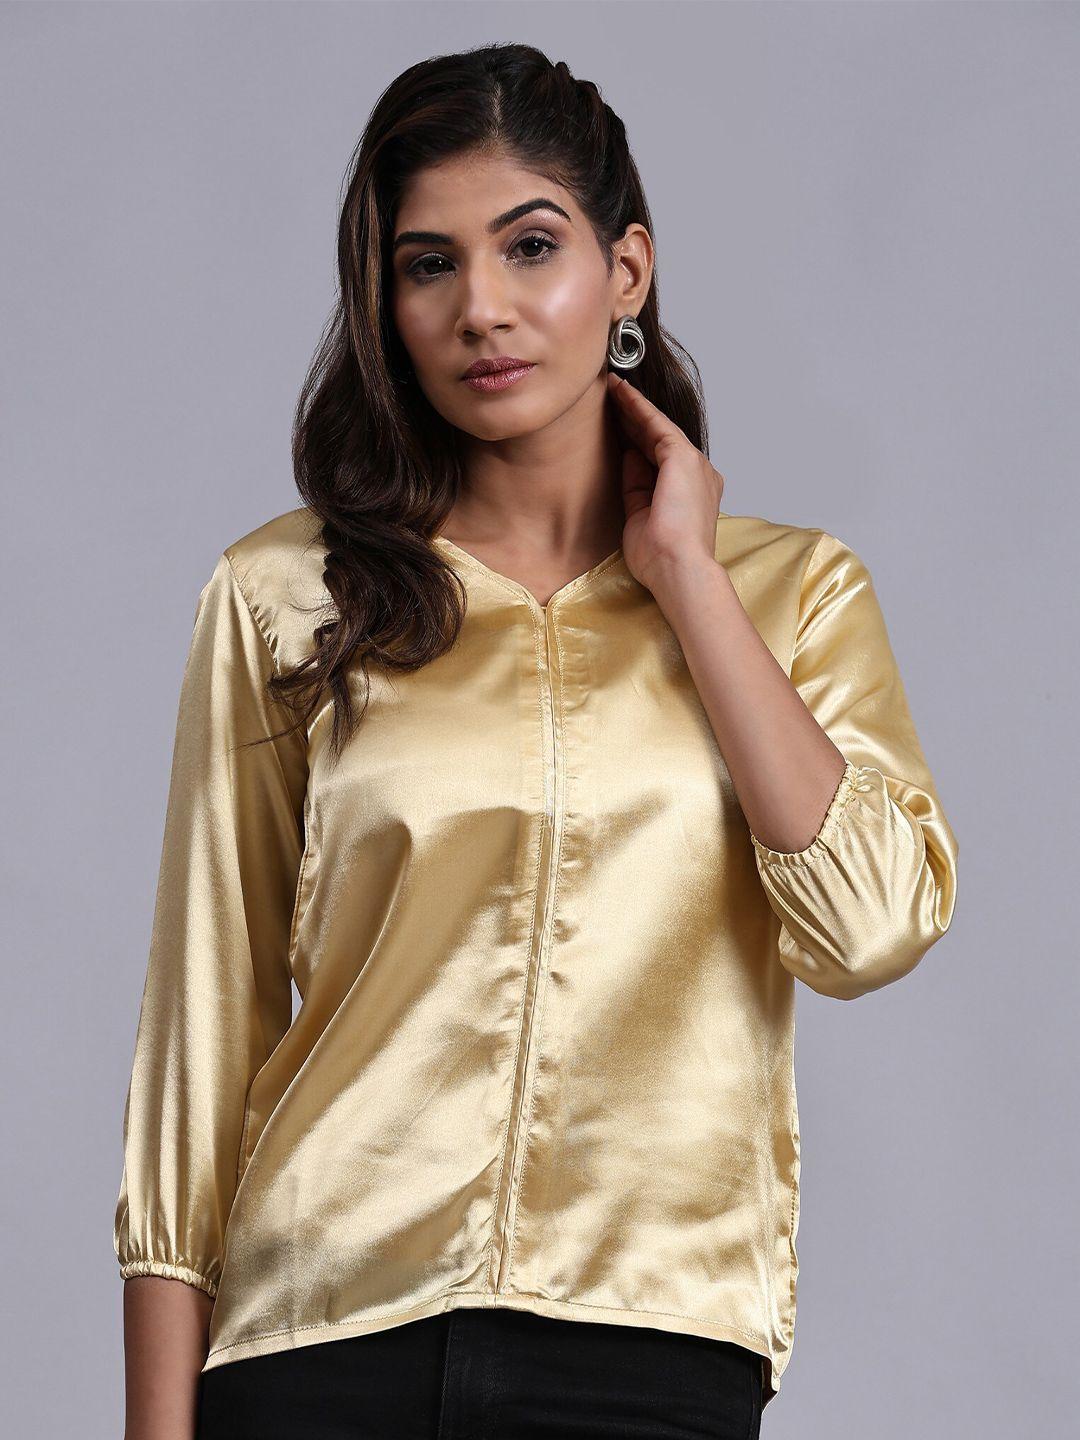 kalini gold-toned satin shirt style top